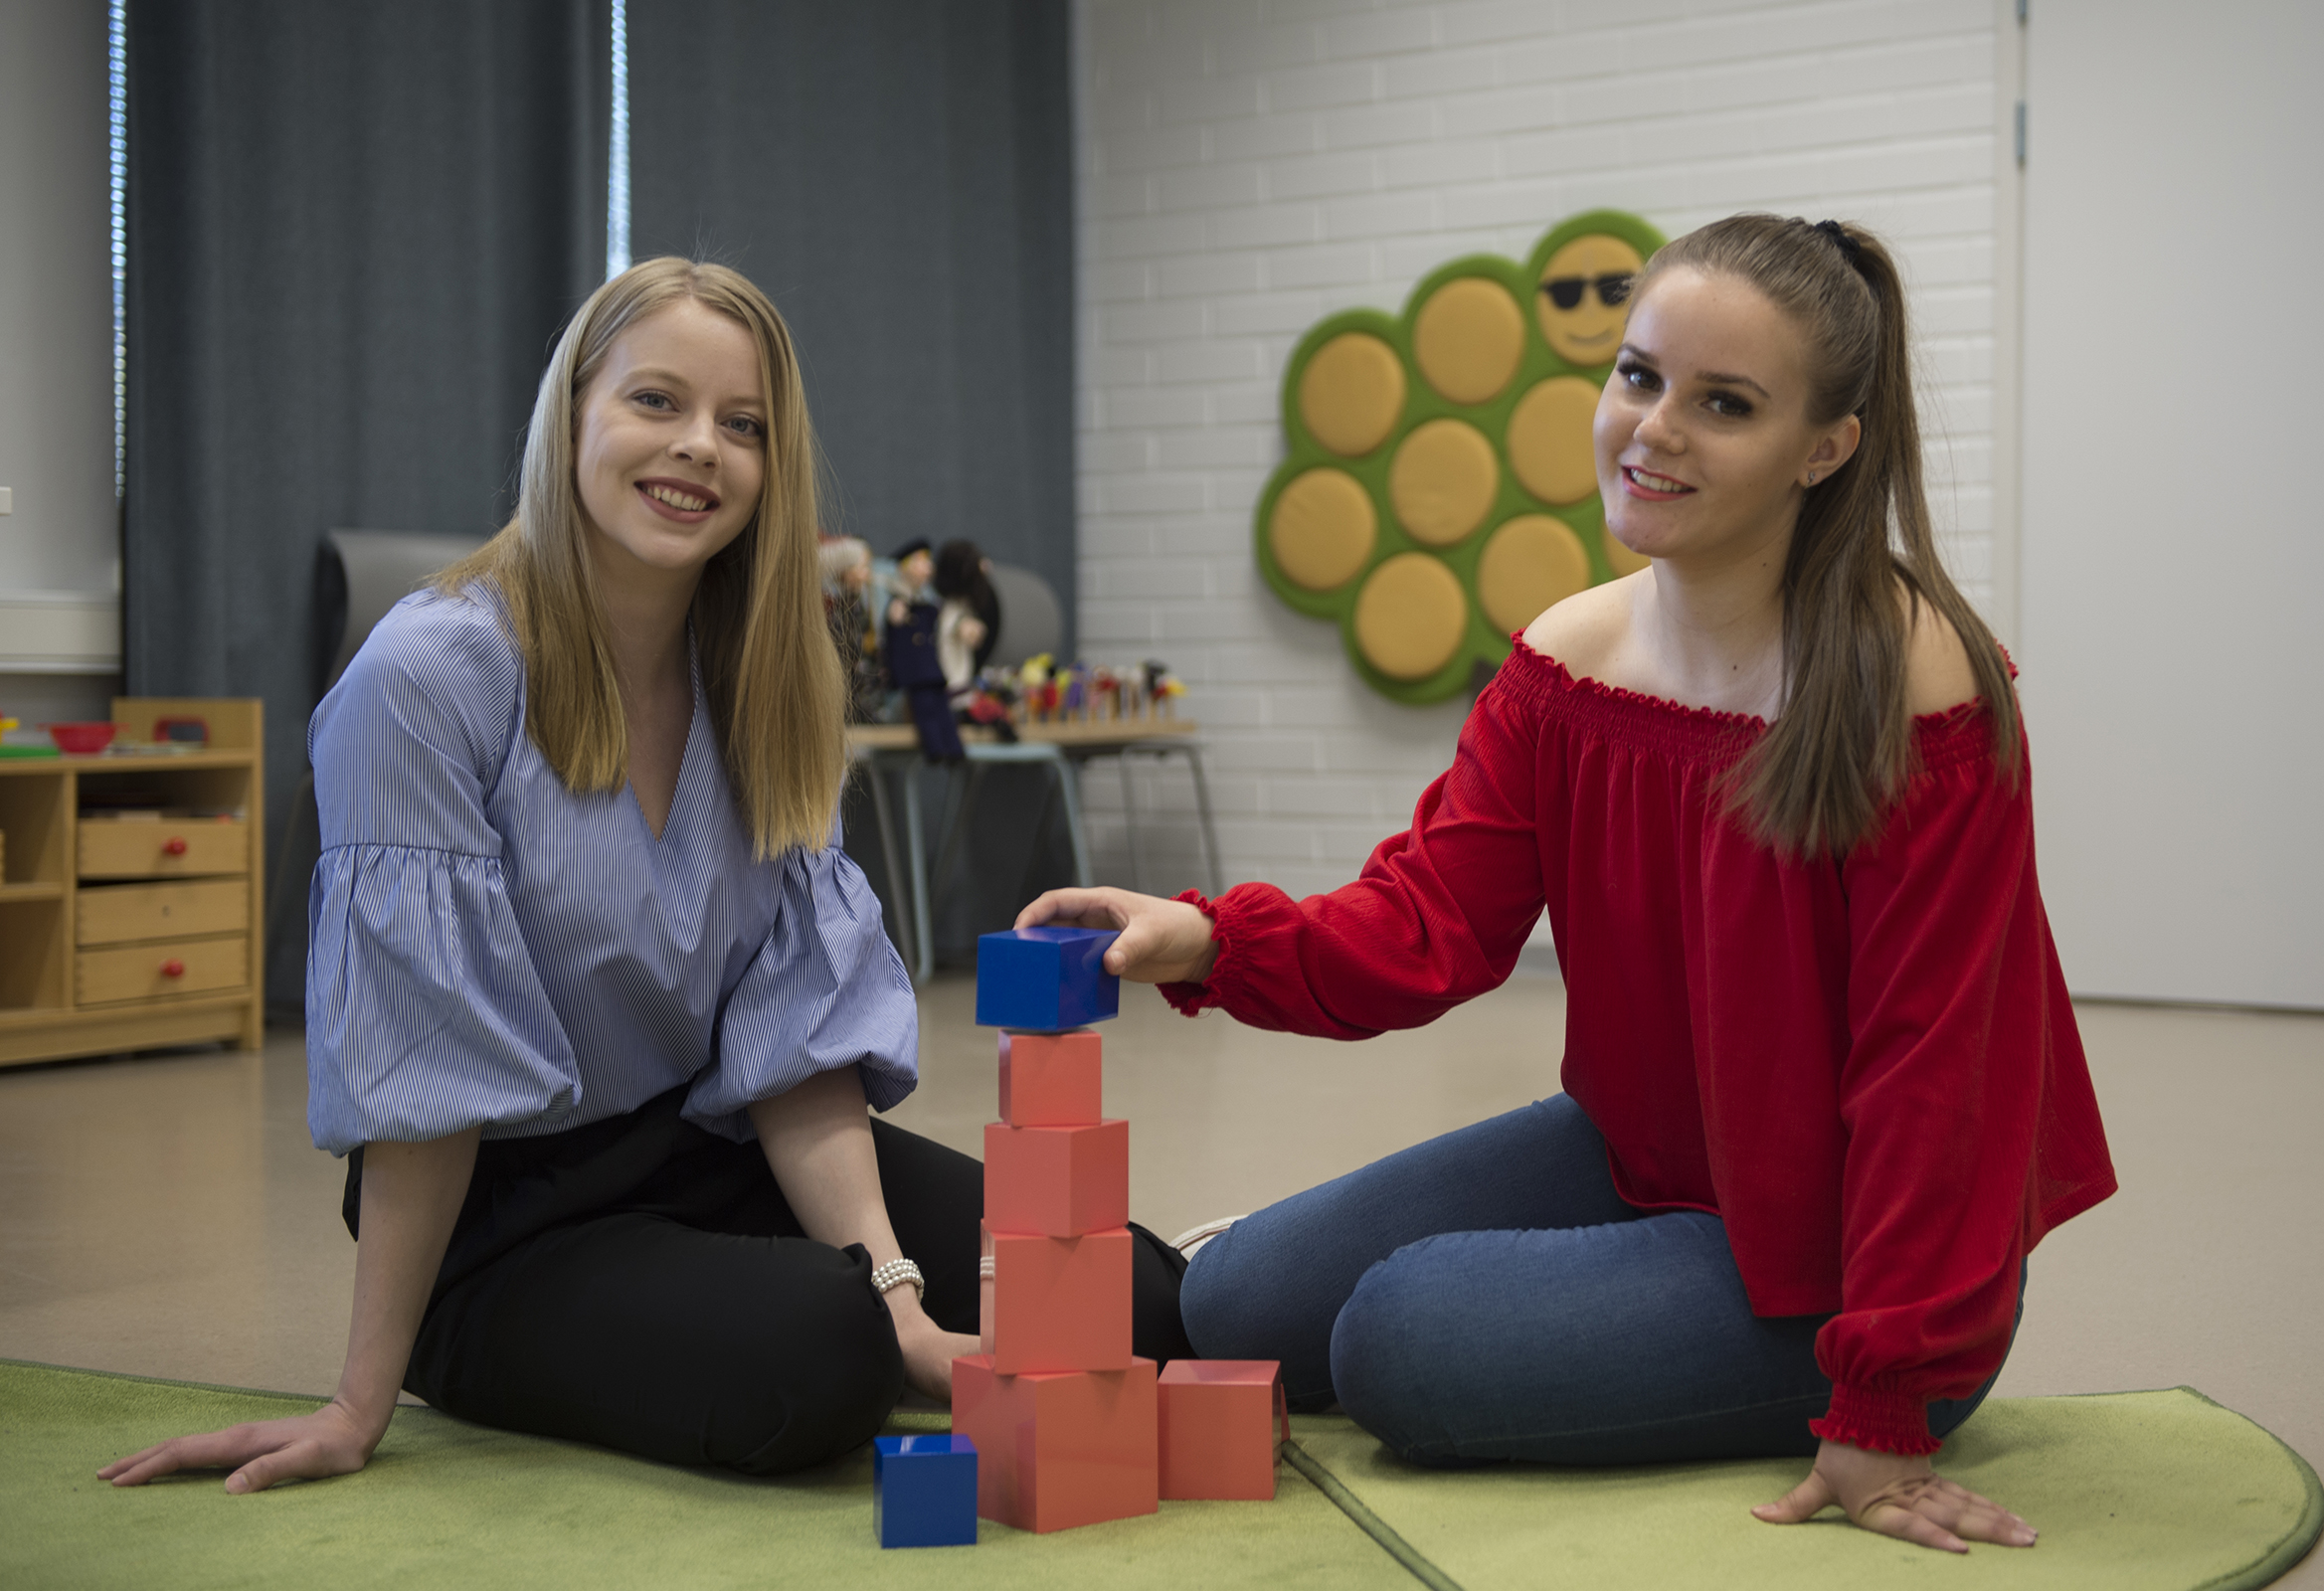 Kaksi varhaiskasvatuksen opettajaopiskelijaa istuvat rakentamassa pientä tornia palikoista.